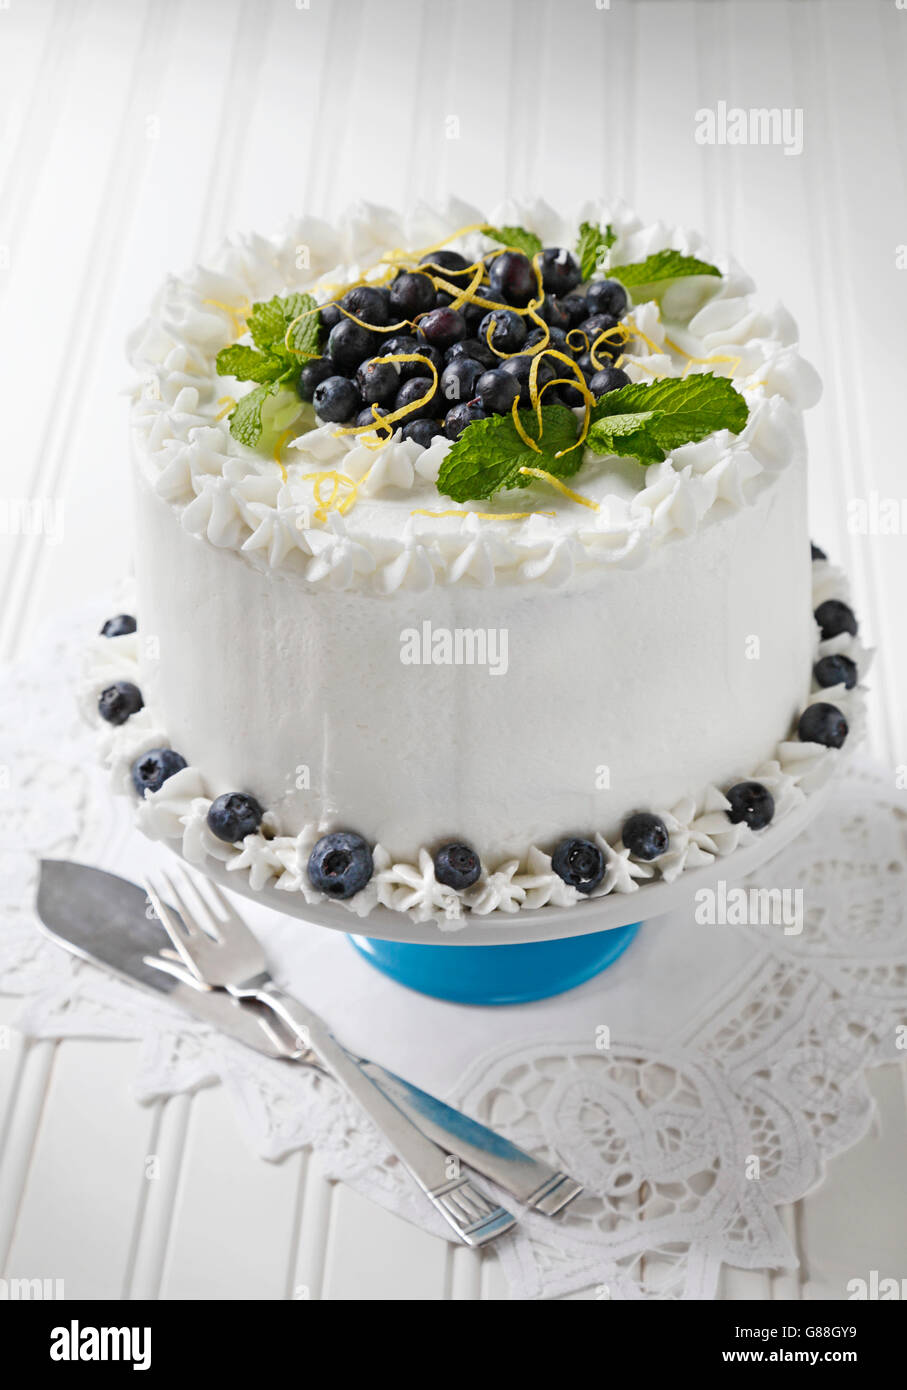 Heidelbeer-Kuchen mit Vanille Zuckerguss verziert mit Heidelbeeren, Zitrone Zest und Minze Blätter. Stockfoto